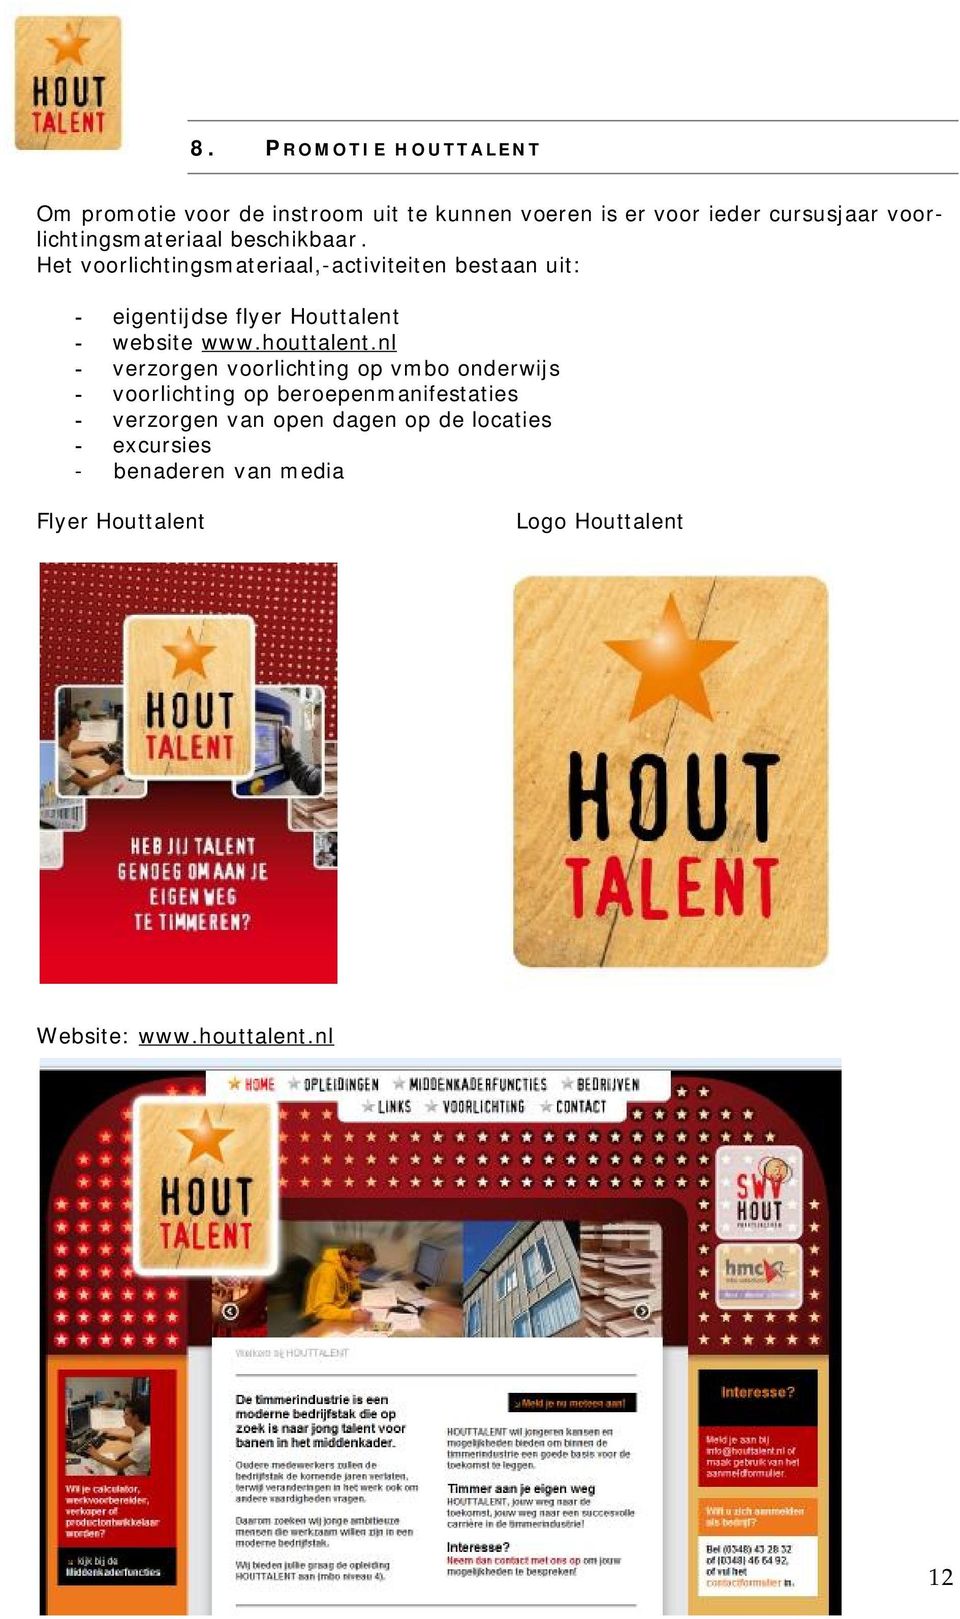 Het voorlichtingsmateriaal,-activiteiten bestaan uit: - eigentijdse flyer Houttalent - website www.houttalent.